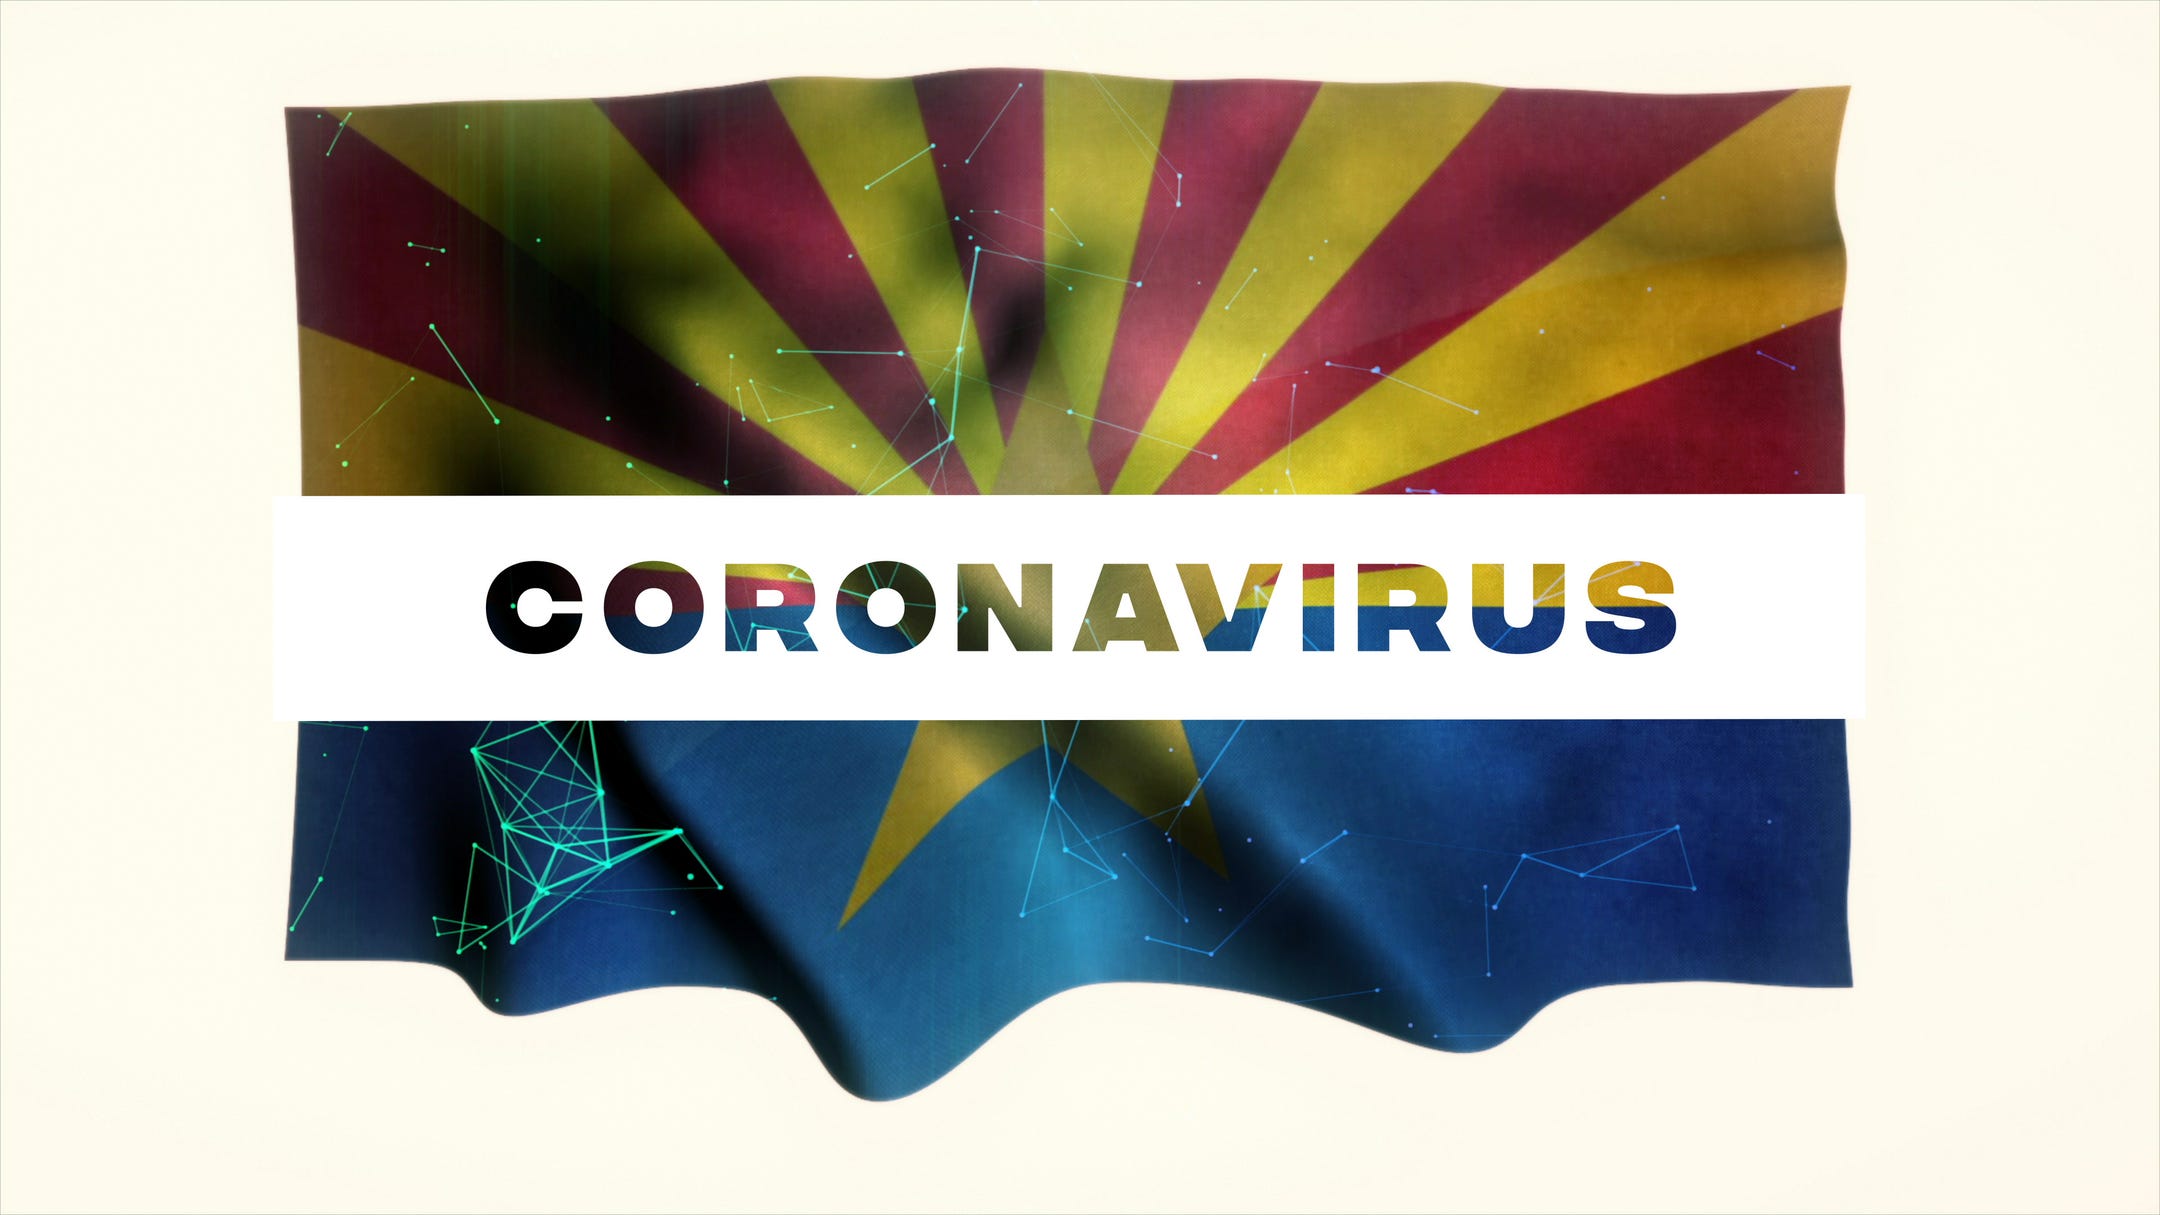 Coronavirus By Arizona Zip Code Map With Covid 19 Data